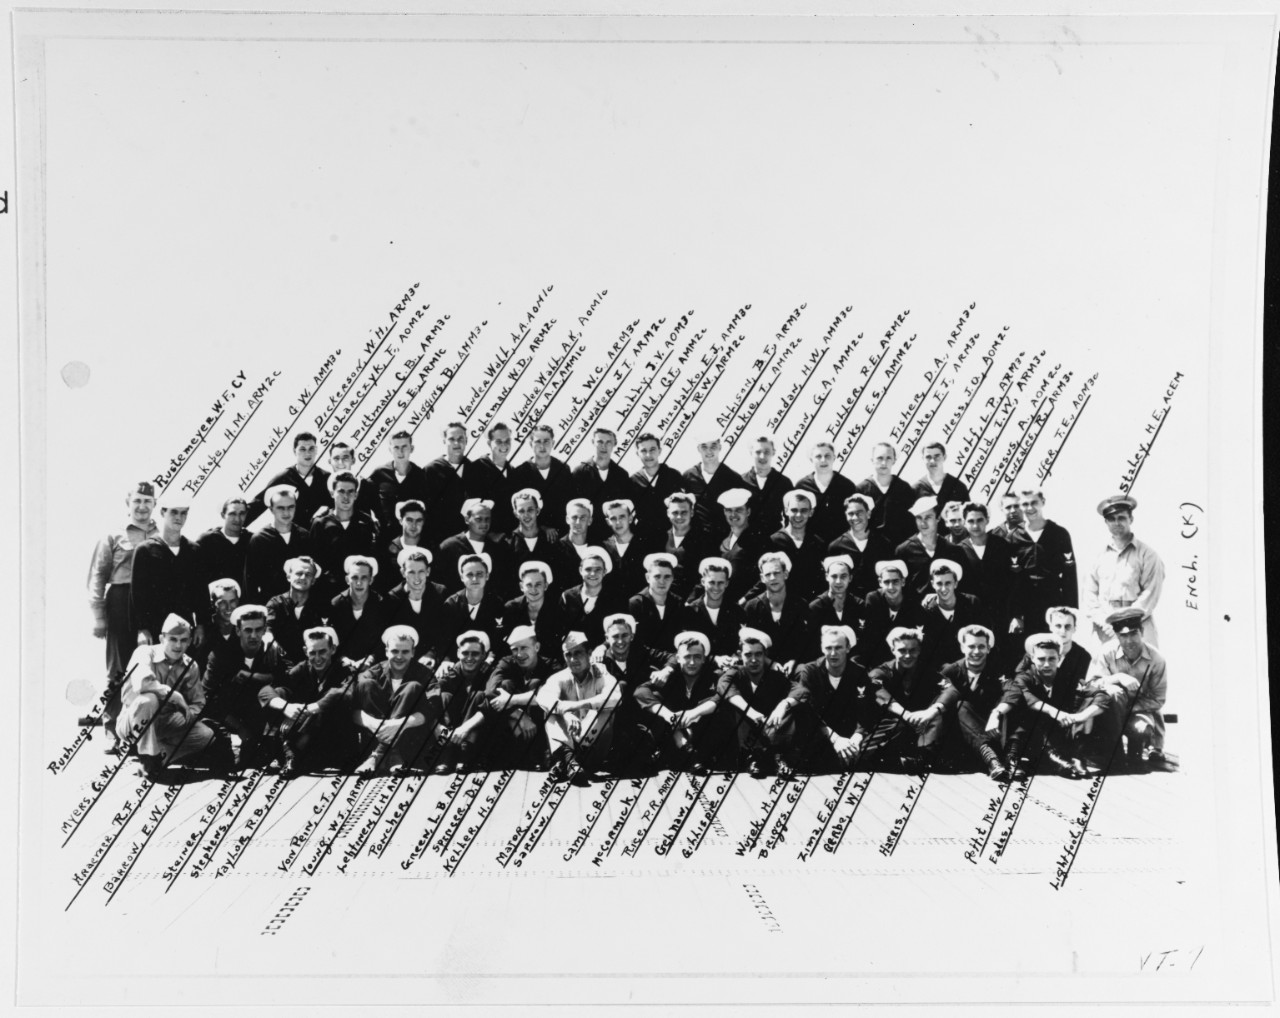 Torpedo Squadron Seven (VT-7)